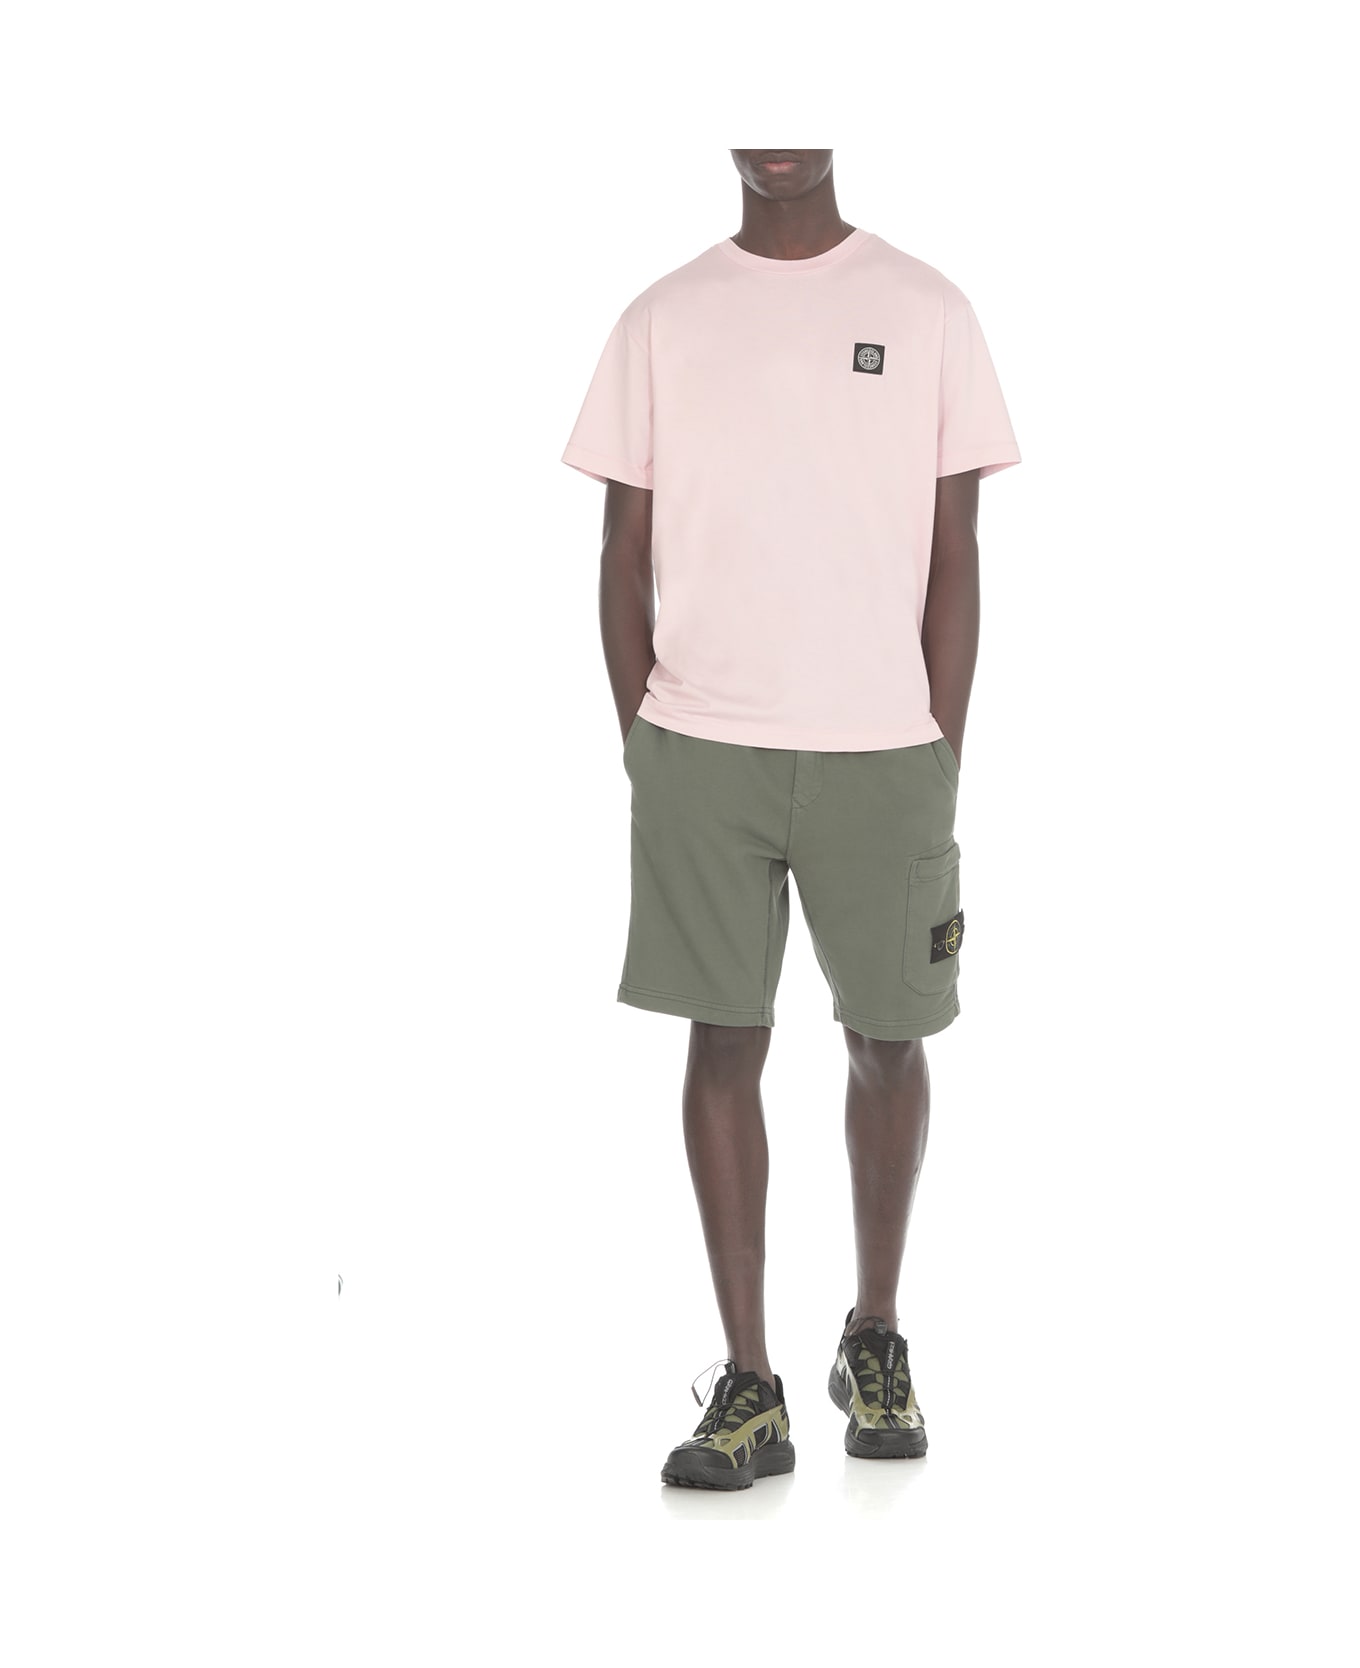 Stone Island Cotton T-shirt - Pink